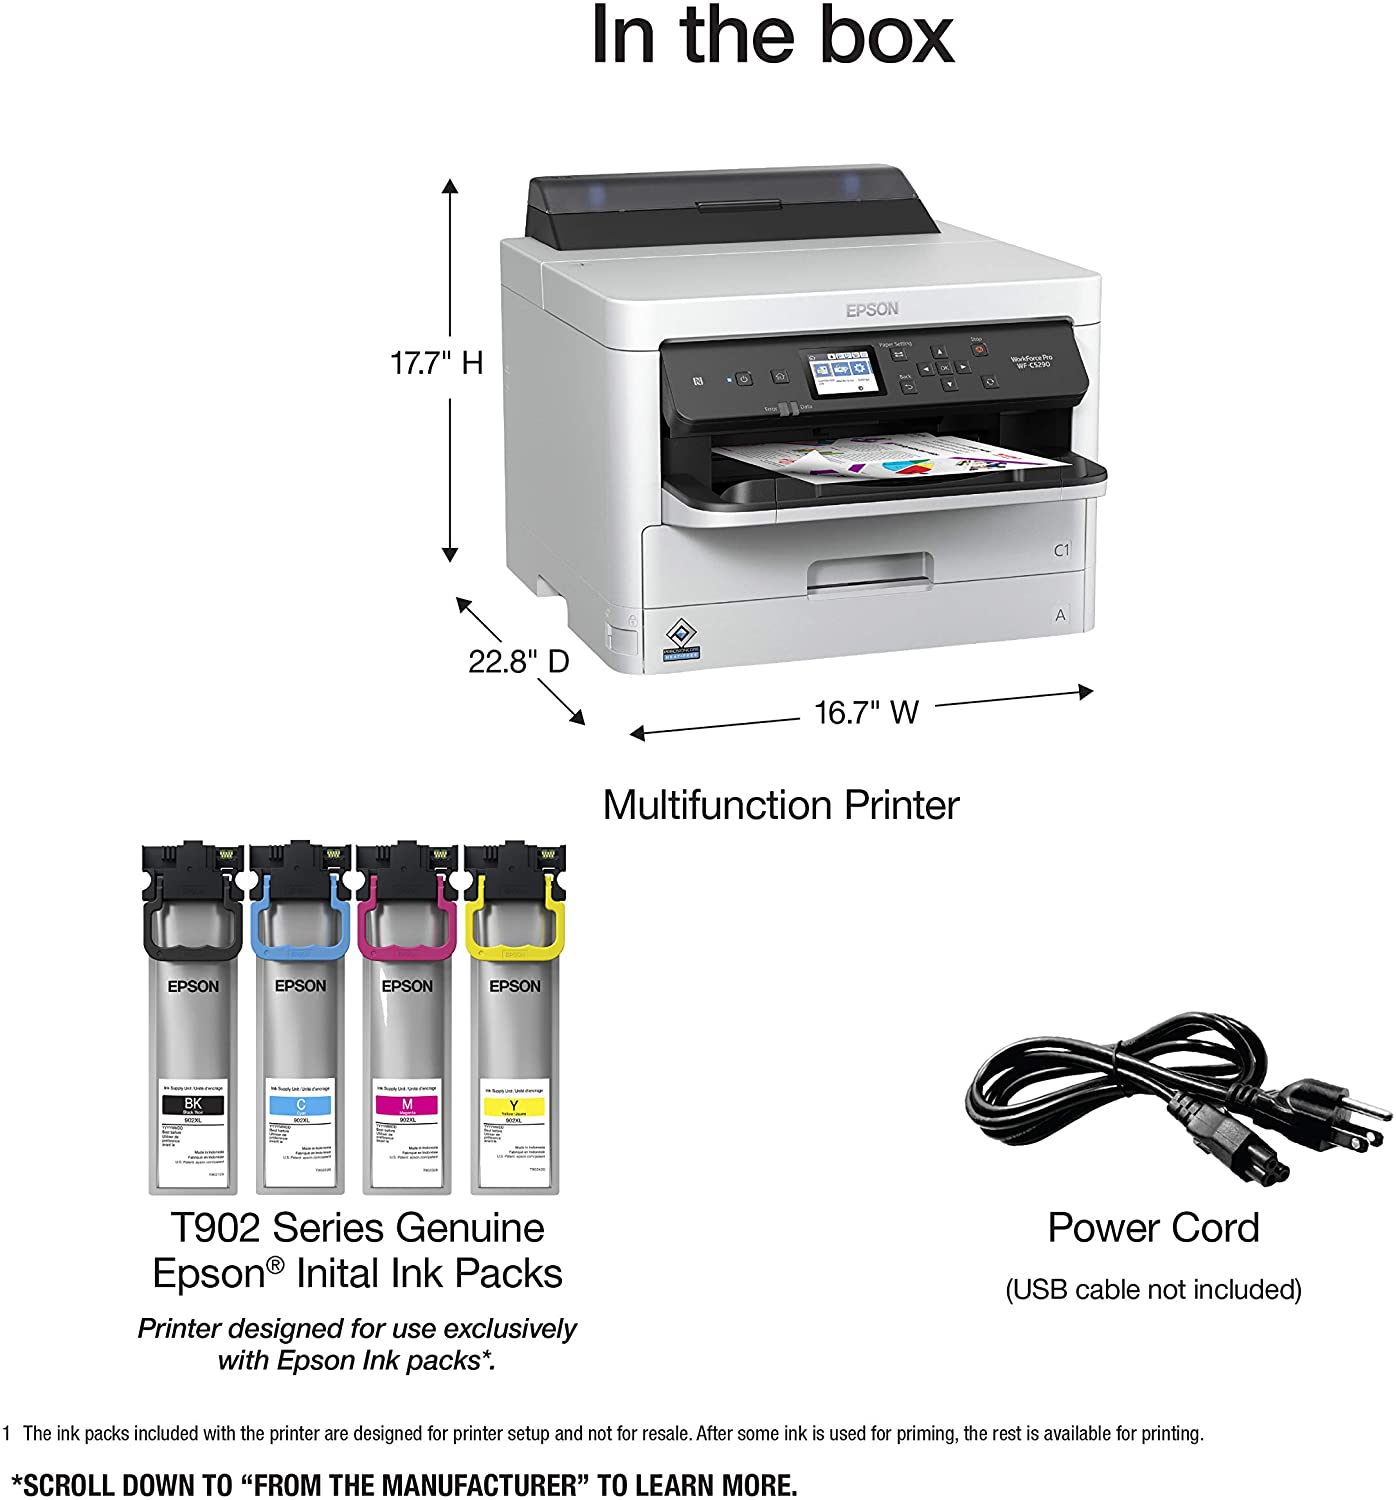   Impresora Multifuncion Epson WorkForce Pro C-5290, alcanza velocidad de impresión de hasta 34 ppm negro y colorde alta productividad y bajos costos operativos con soluciones  de gestión empresariales